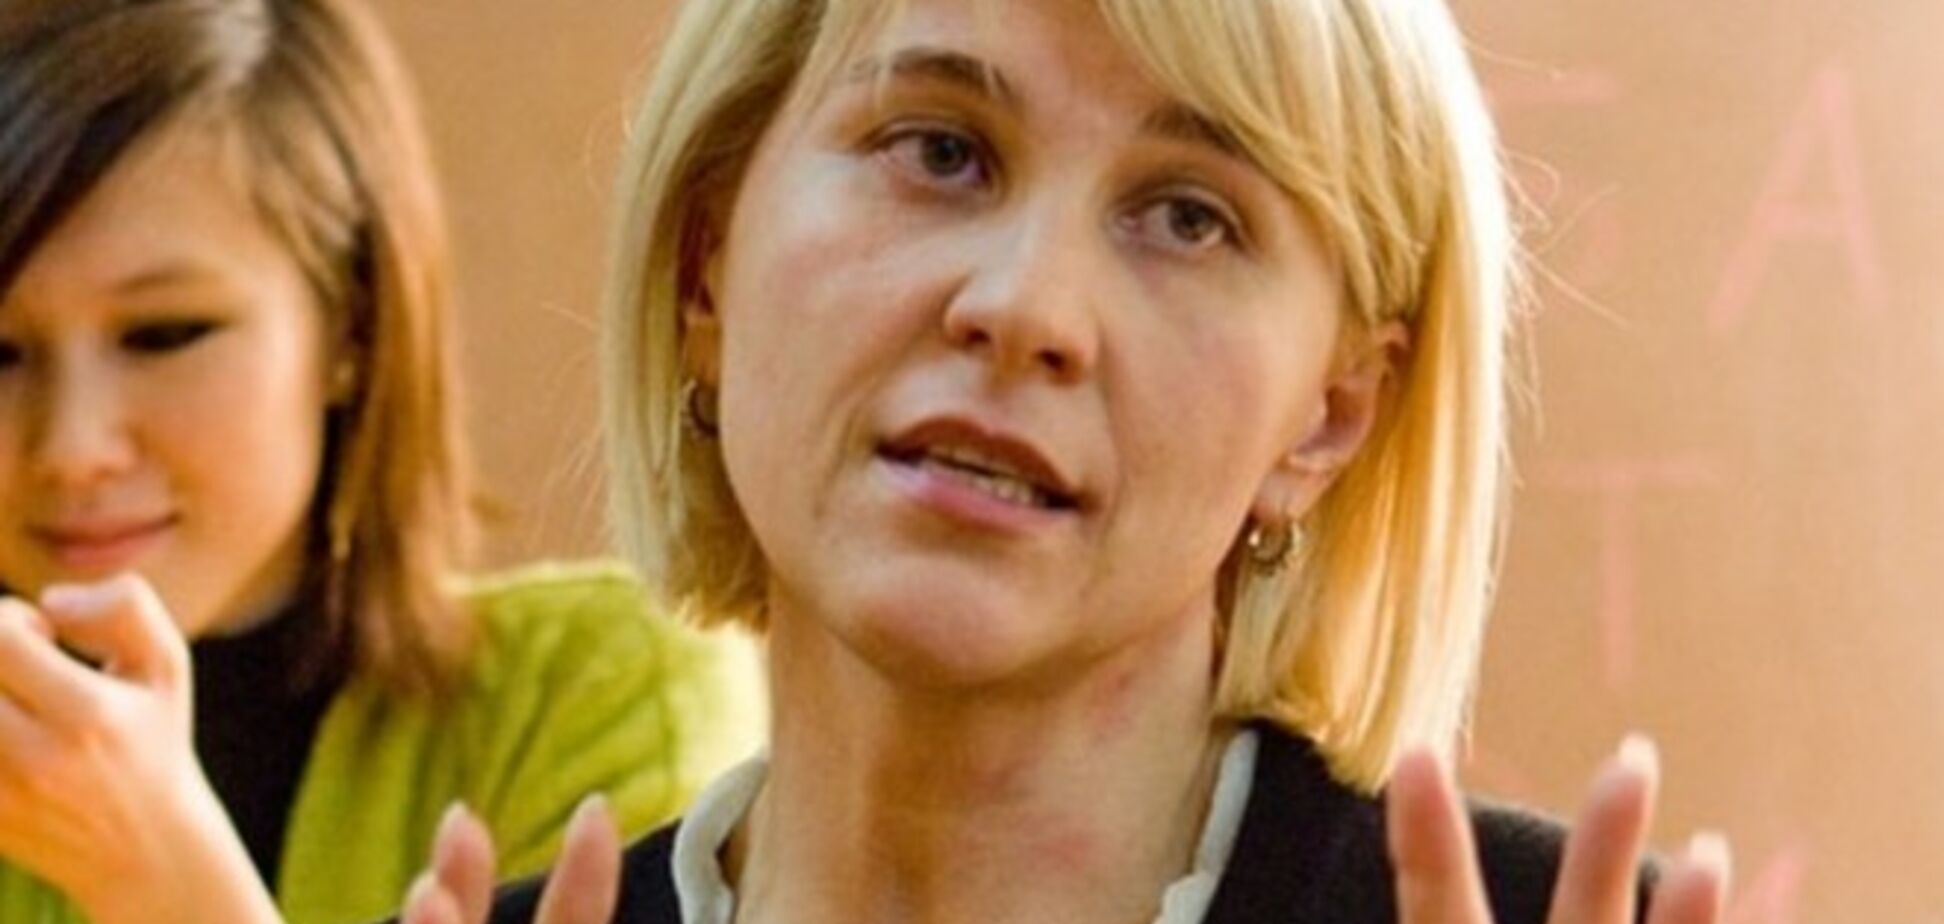 Віце-губернатором Одеської області стала журналістка